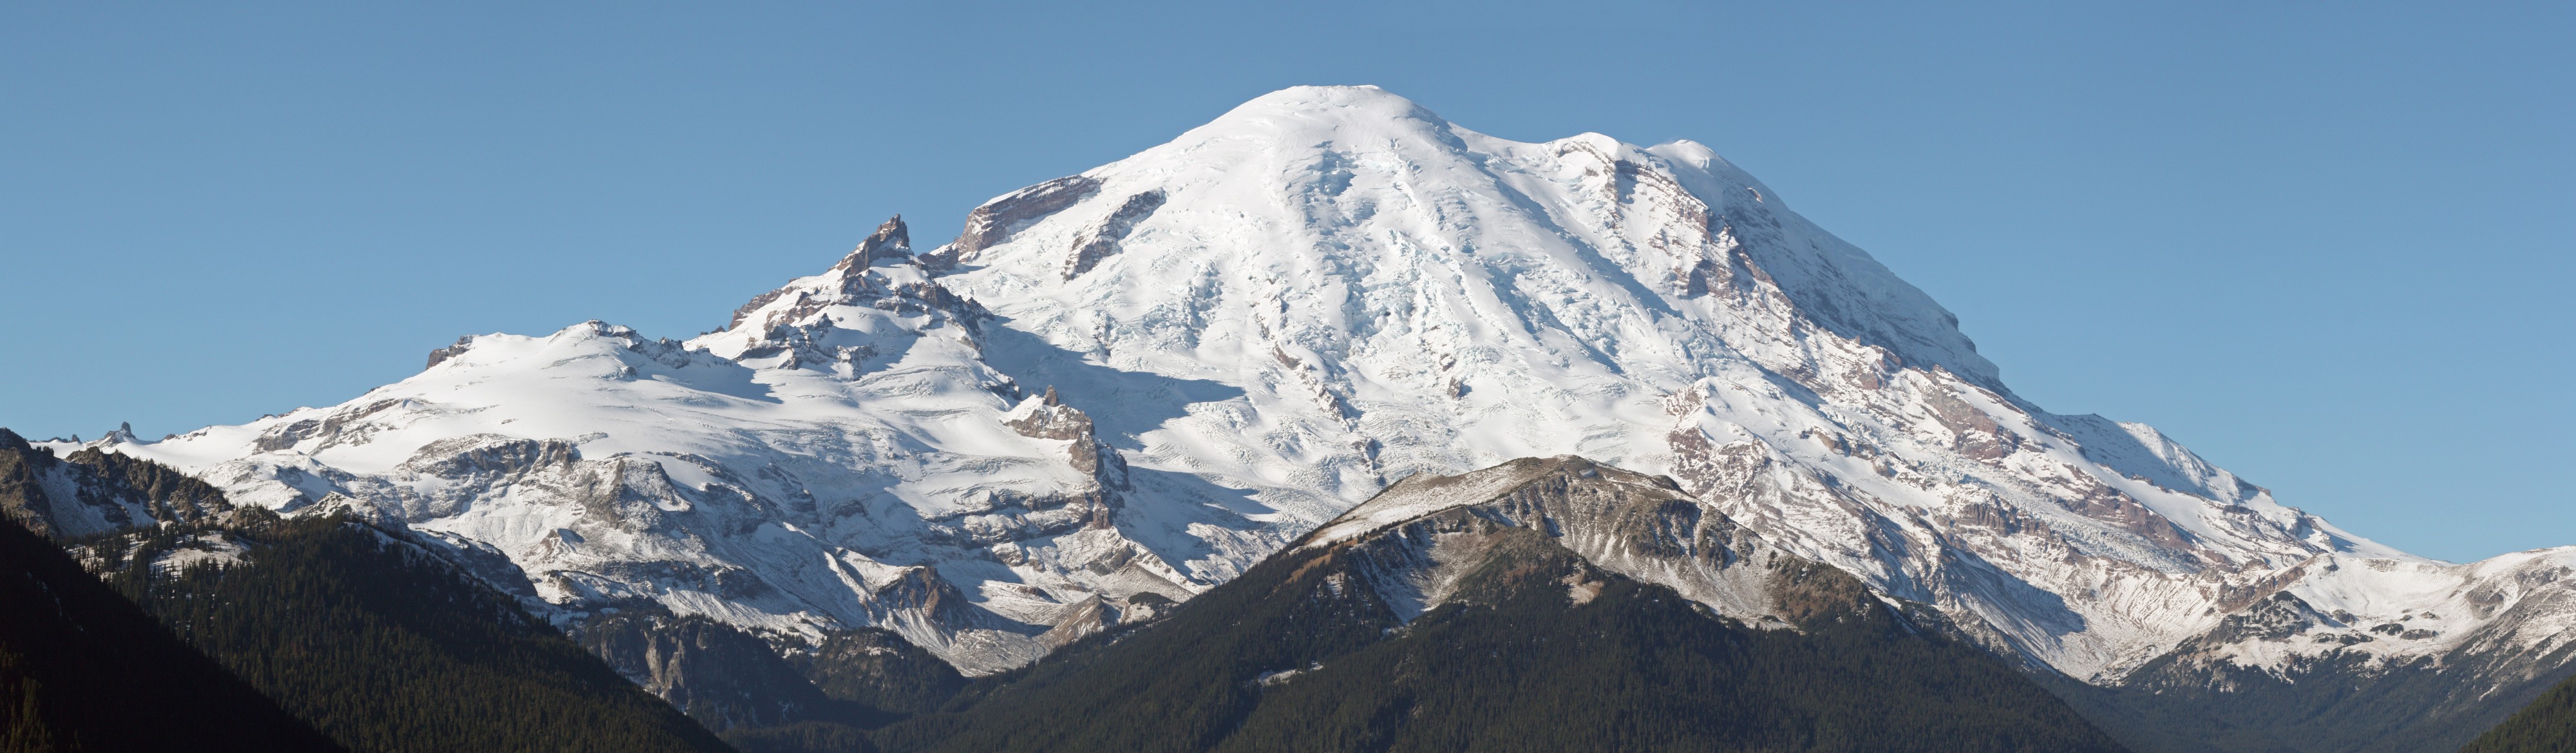 Mount Rainier 5845s